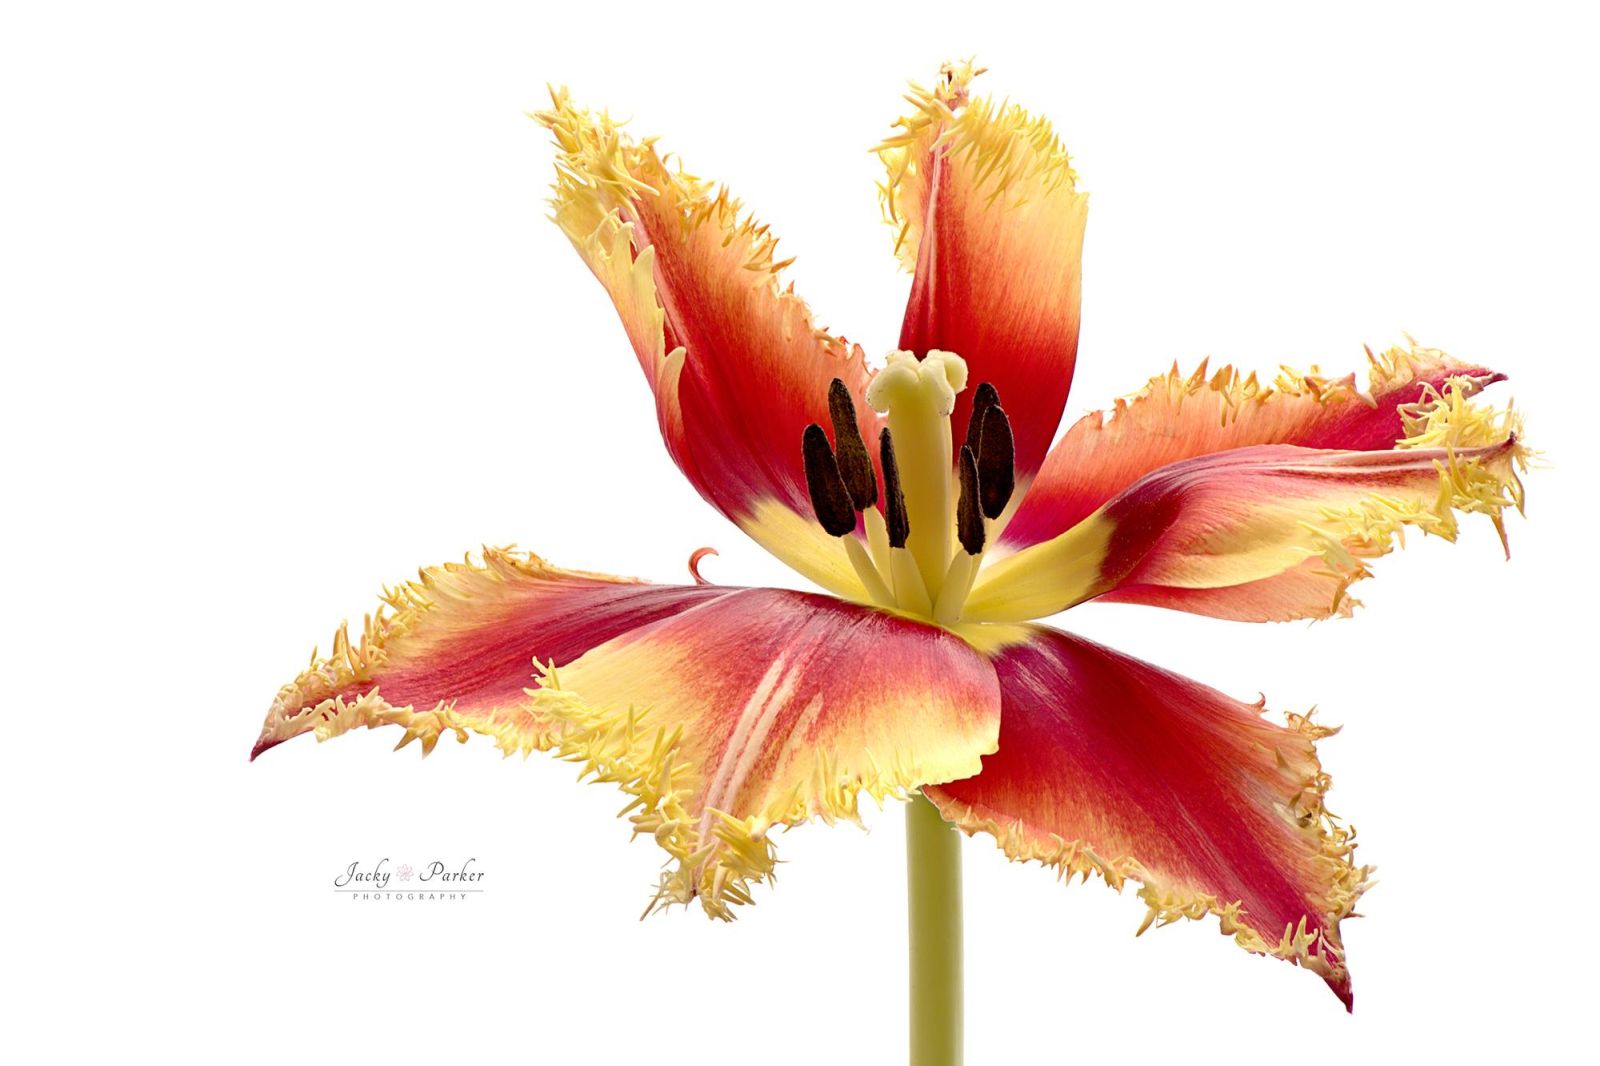 flower photography by jacky parker